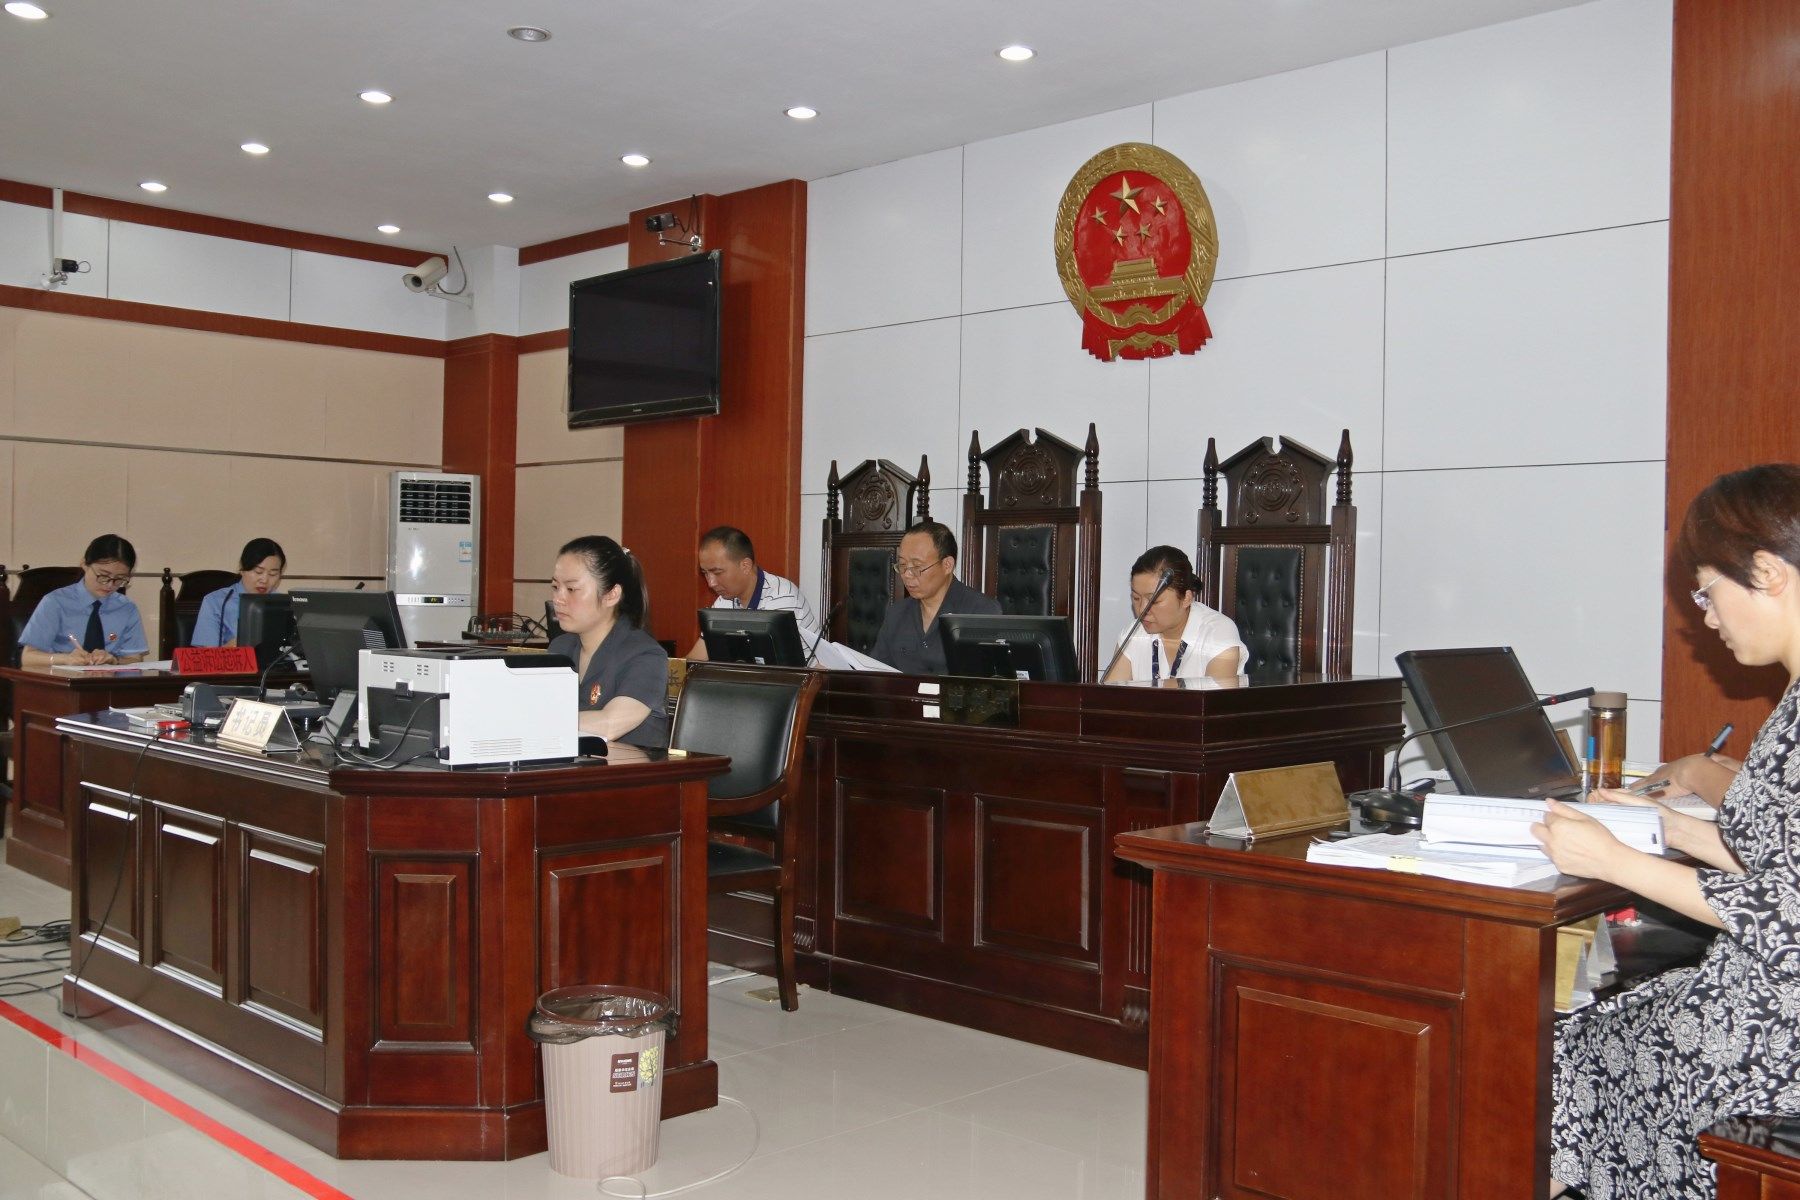 安徽泗县法院开庭审理首例涉税行政公益诉讼案件